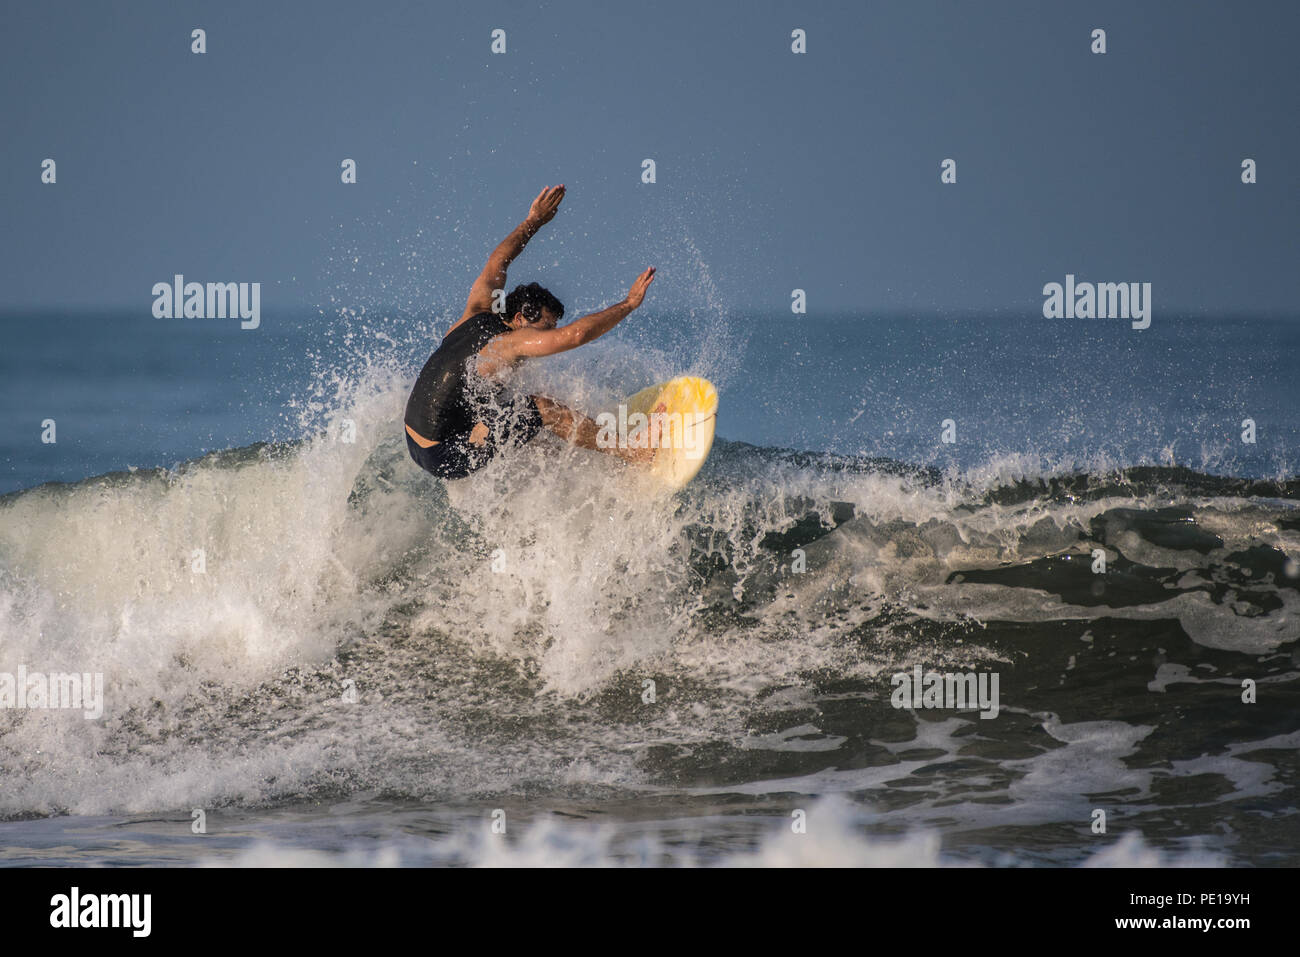 Shortboarder qualifiés à l'aide d'armes en tant que surfeur équilibre lors de la projection dans la lèvre de la vague à Surfer's Knoll à Ventura, Californie le 11 août 2018 Banque D'Images